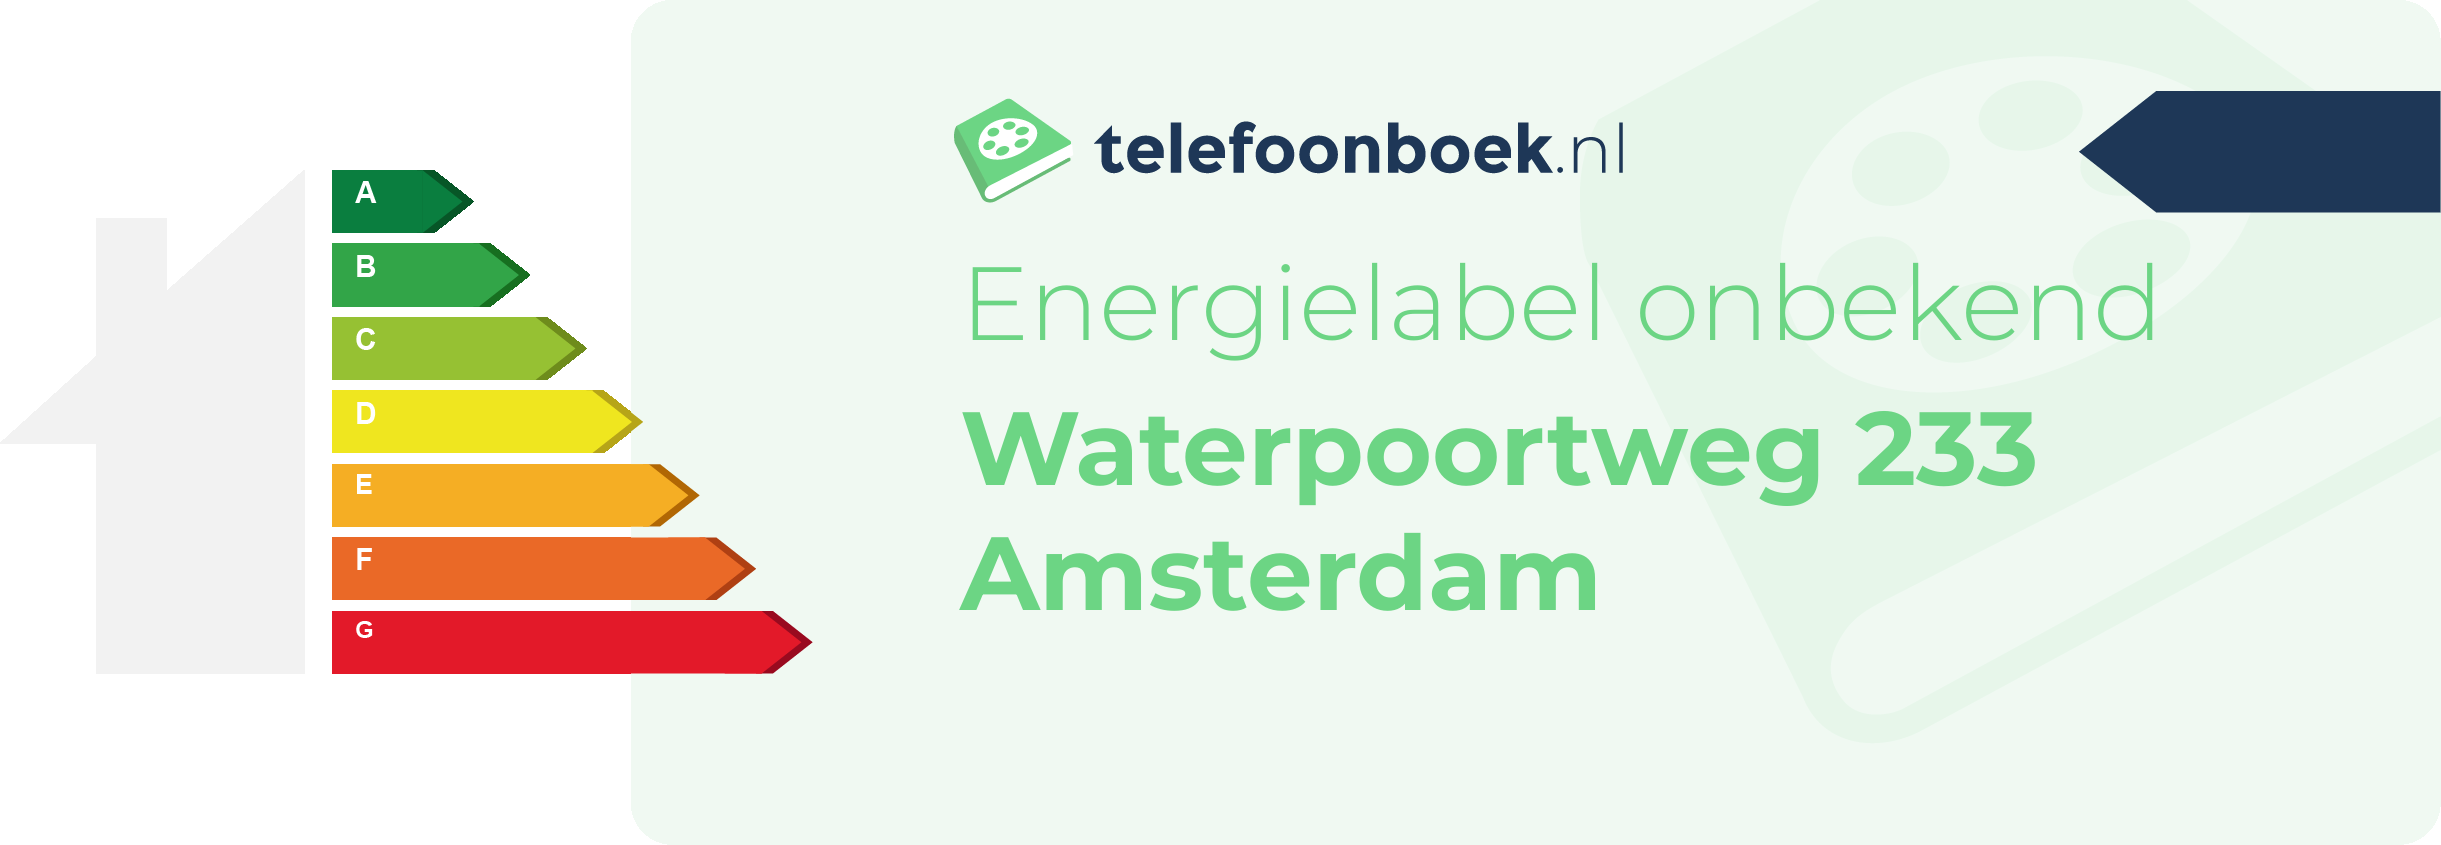 Energielabel Waterpoortweg 233 Amsterdam